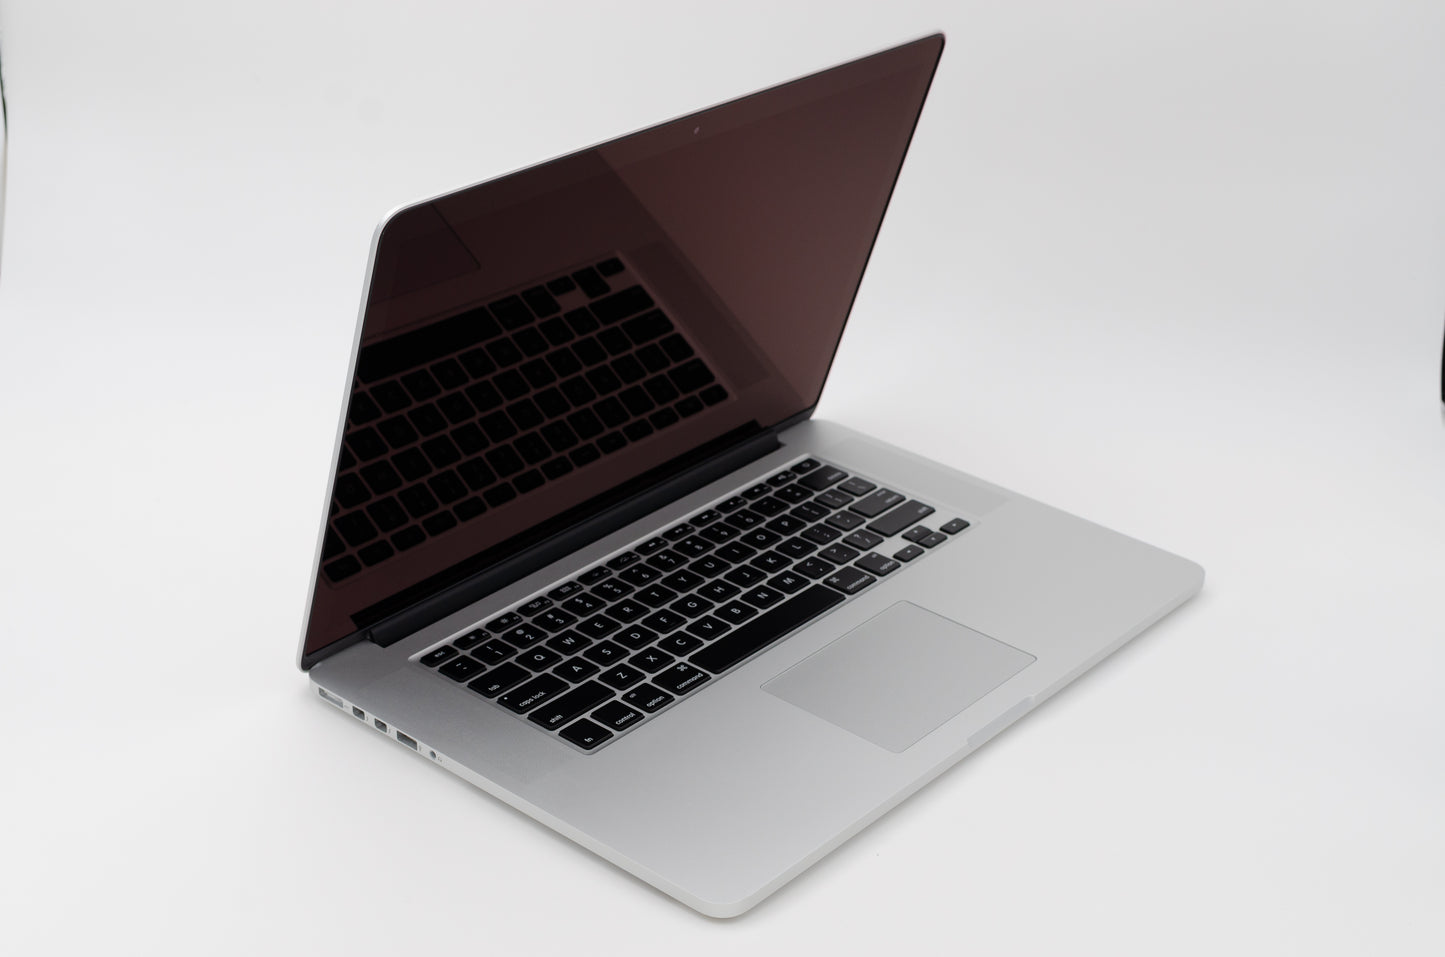 apple-mid-2012-15.4-inch-macbook-pro-retina-a1398-aluminum-qci7 - 2.6ghz processor, 8gb ram, gt 650m - 1gb gpu-mc976ll/a-2